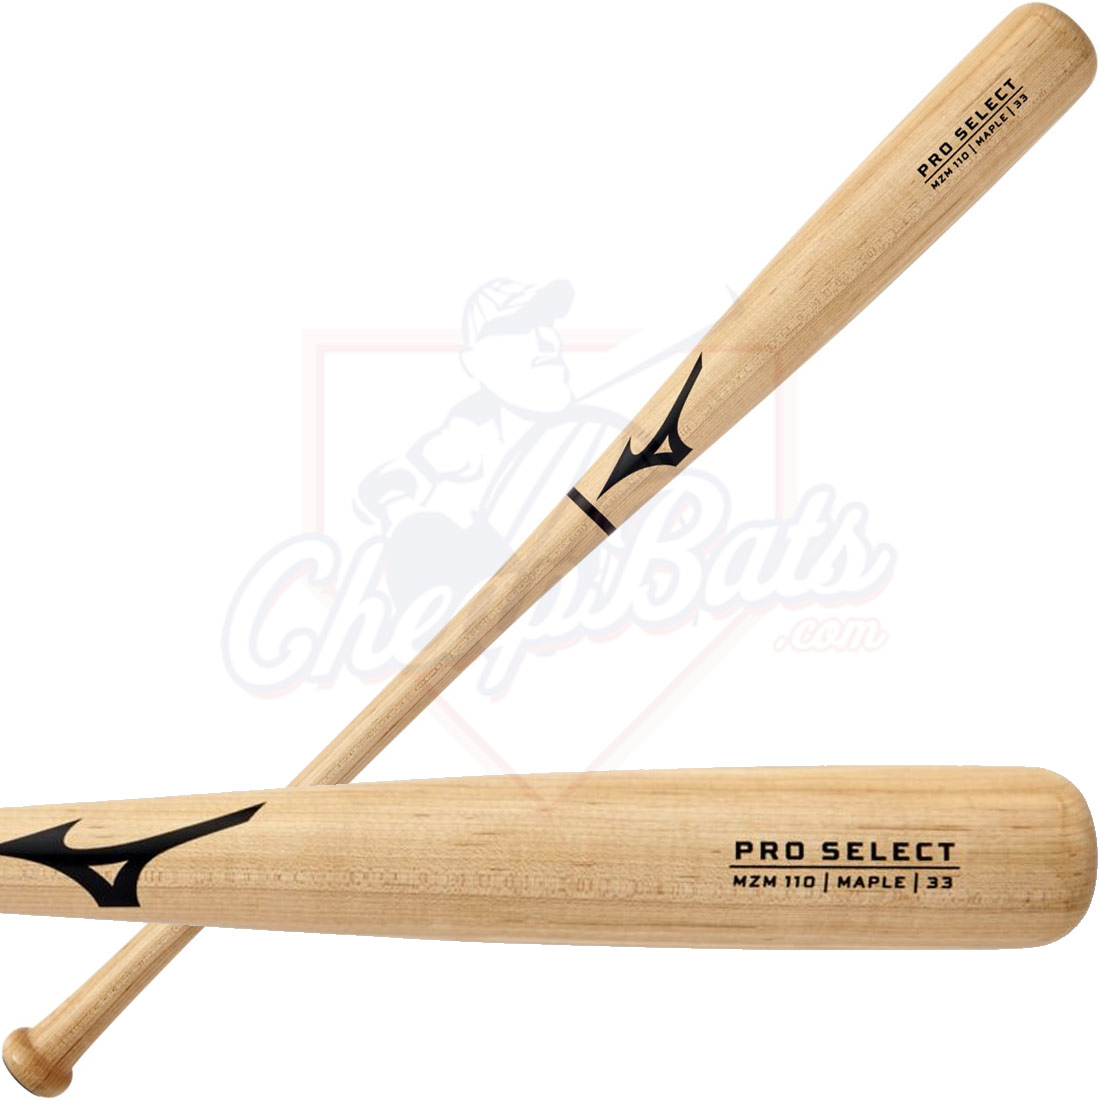 Mizuno Pro Select Maple Wood Baseball Bat MZM110 340634